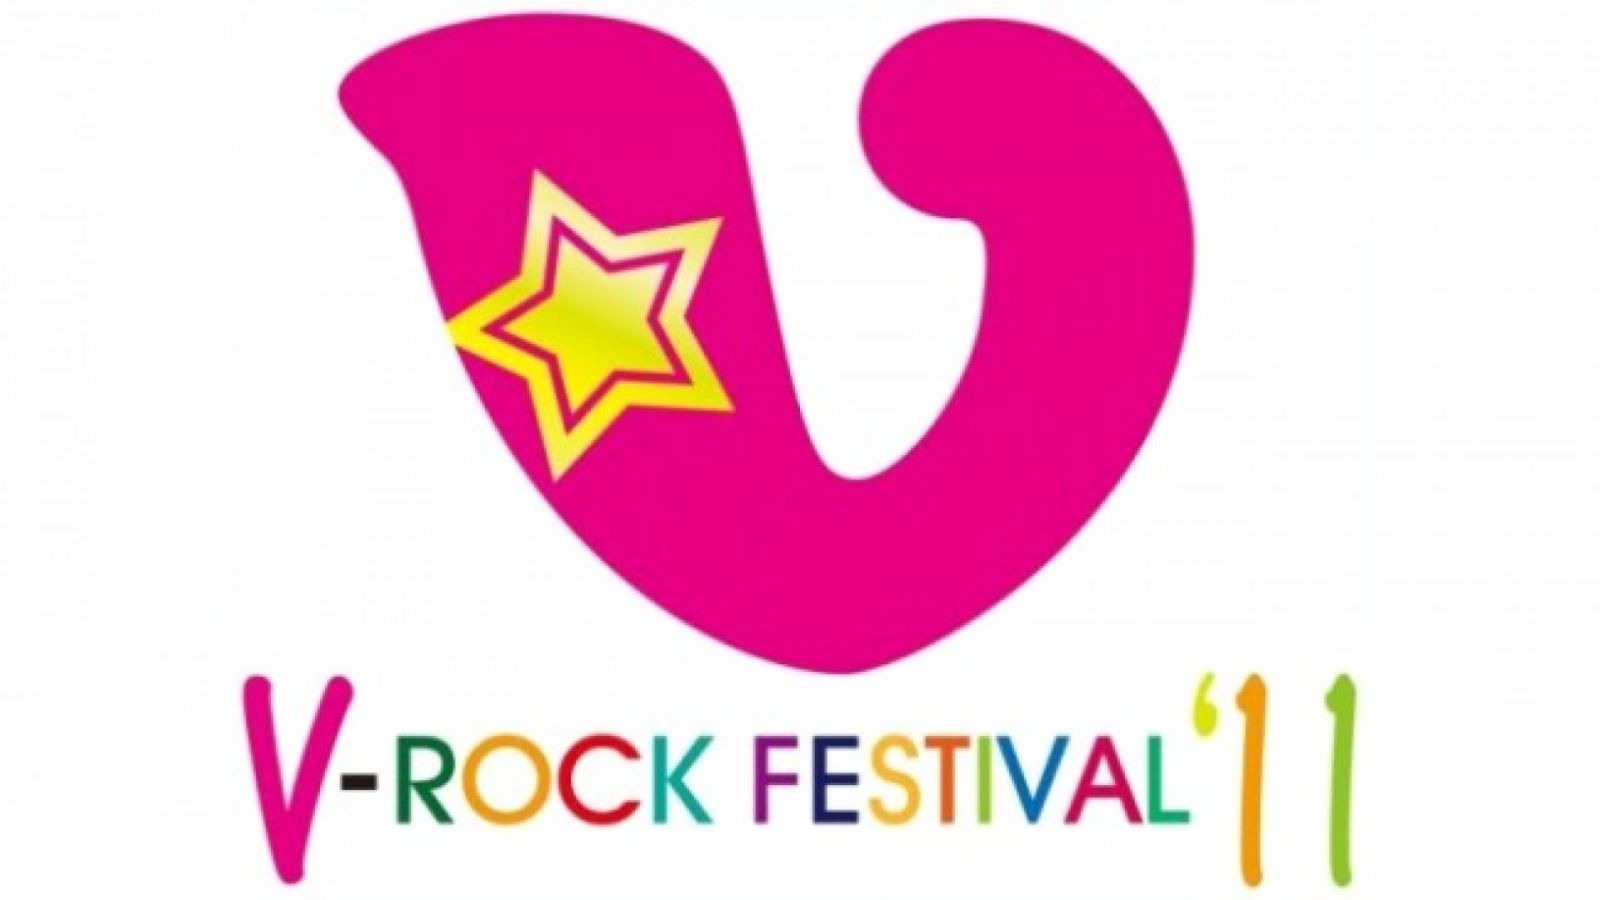 Maiores informações sobre o V-ROCK FESTIVAL '11 © Backstage Project